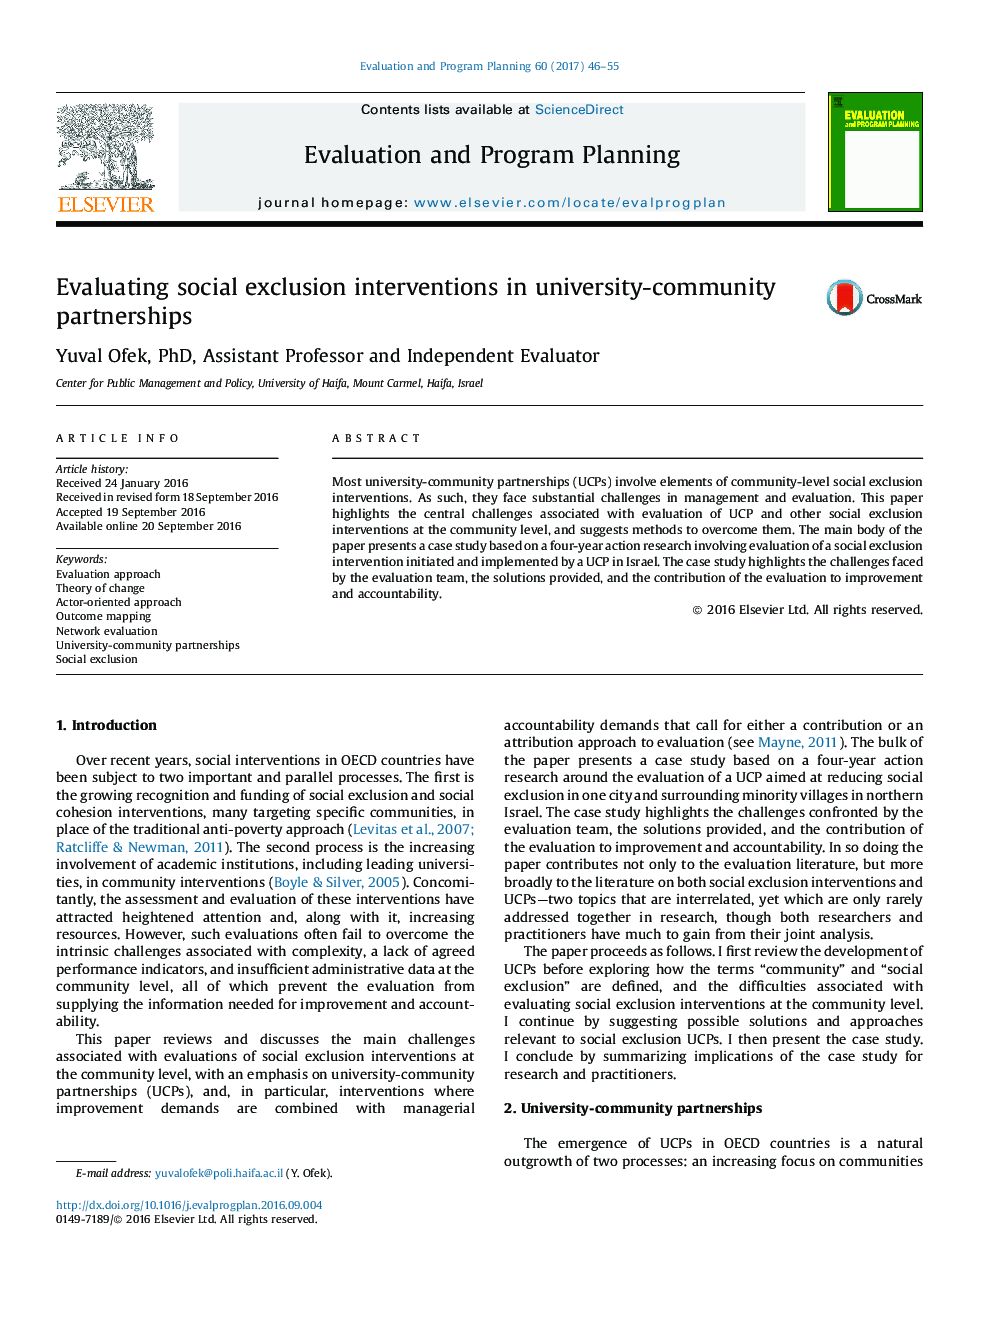 ارزیابی مداخلات جداسازی اجتماعی در مشارکت دانشگاهی و اجتماعی 